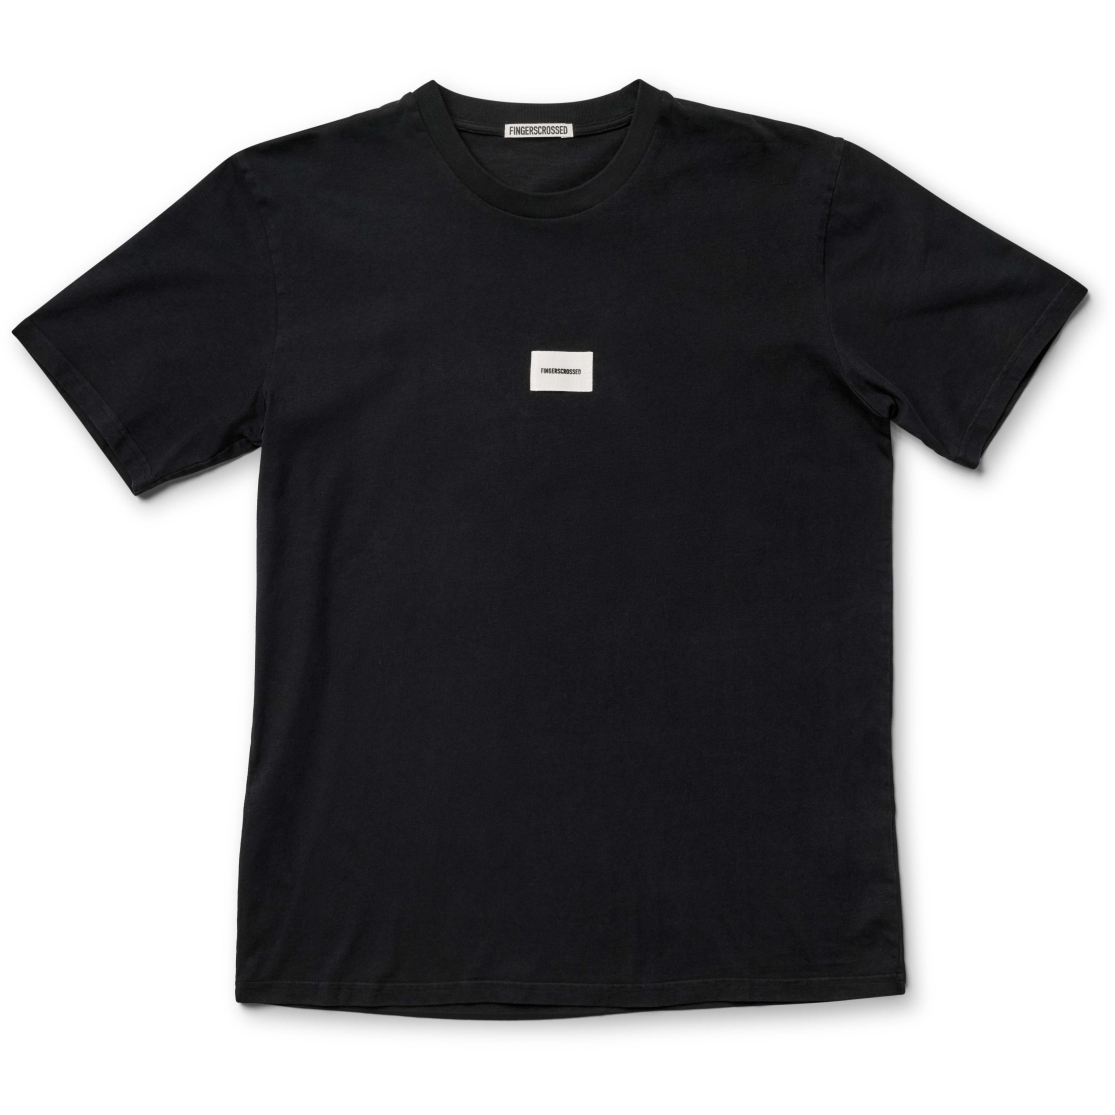 Produktbild von FINGERSCROSSED Classic T-Shirt - Fingerscrossed - Schwarz